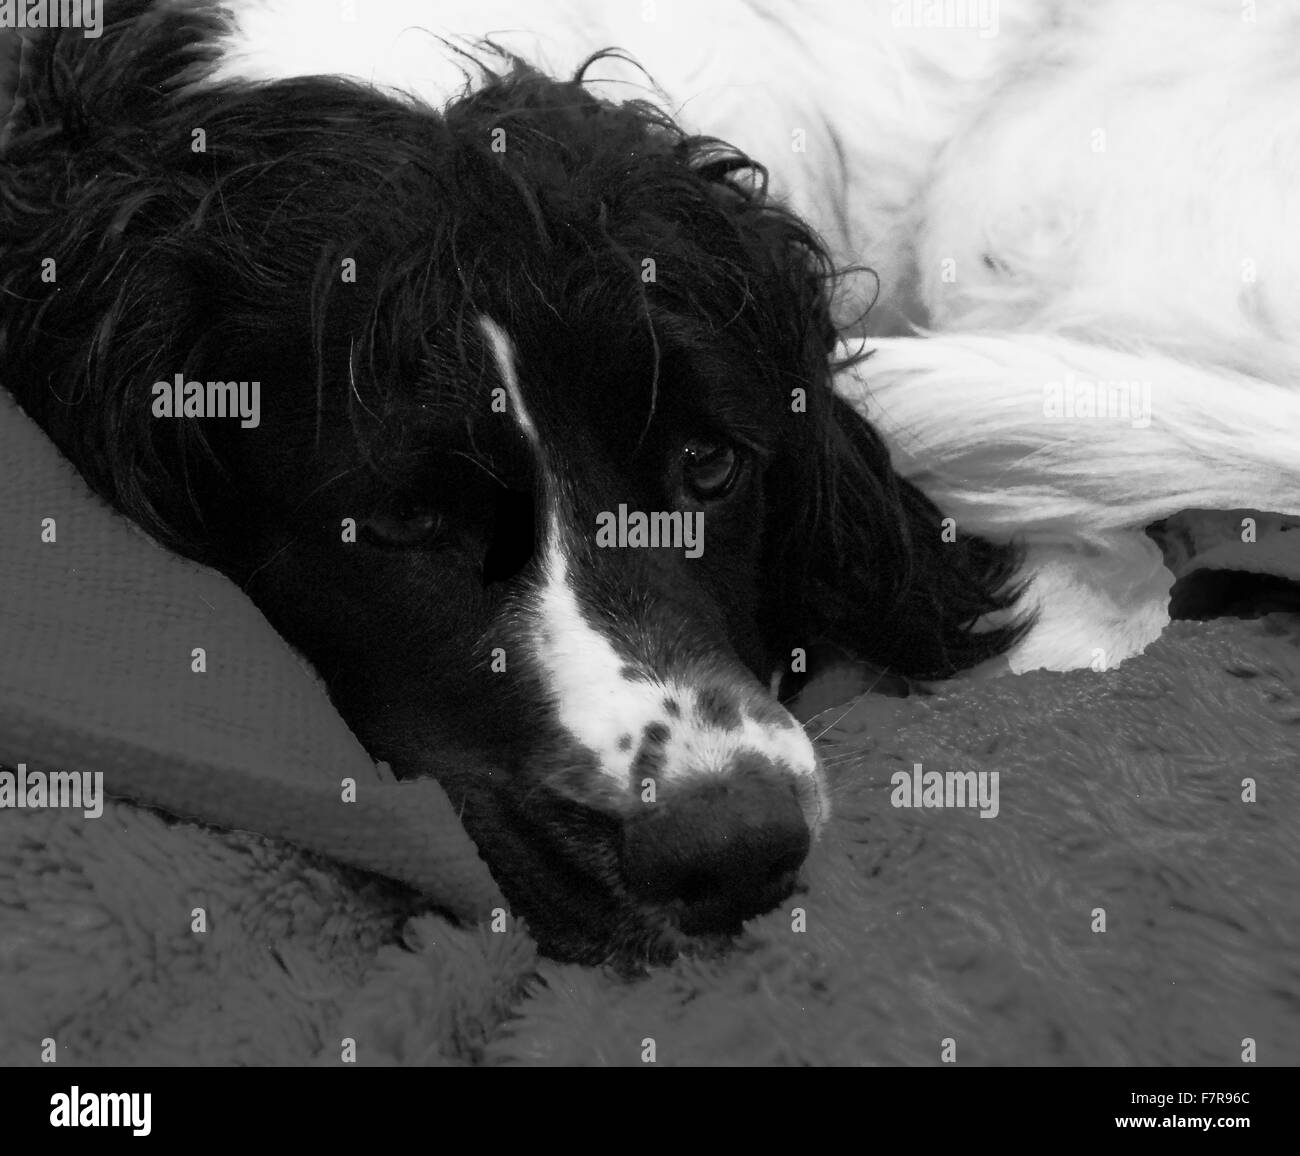 sprocker spaniel,spaniel cross,cocker,springer,pet dog,black and white, Stock Photo